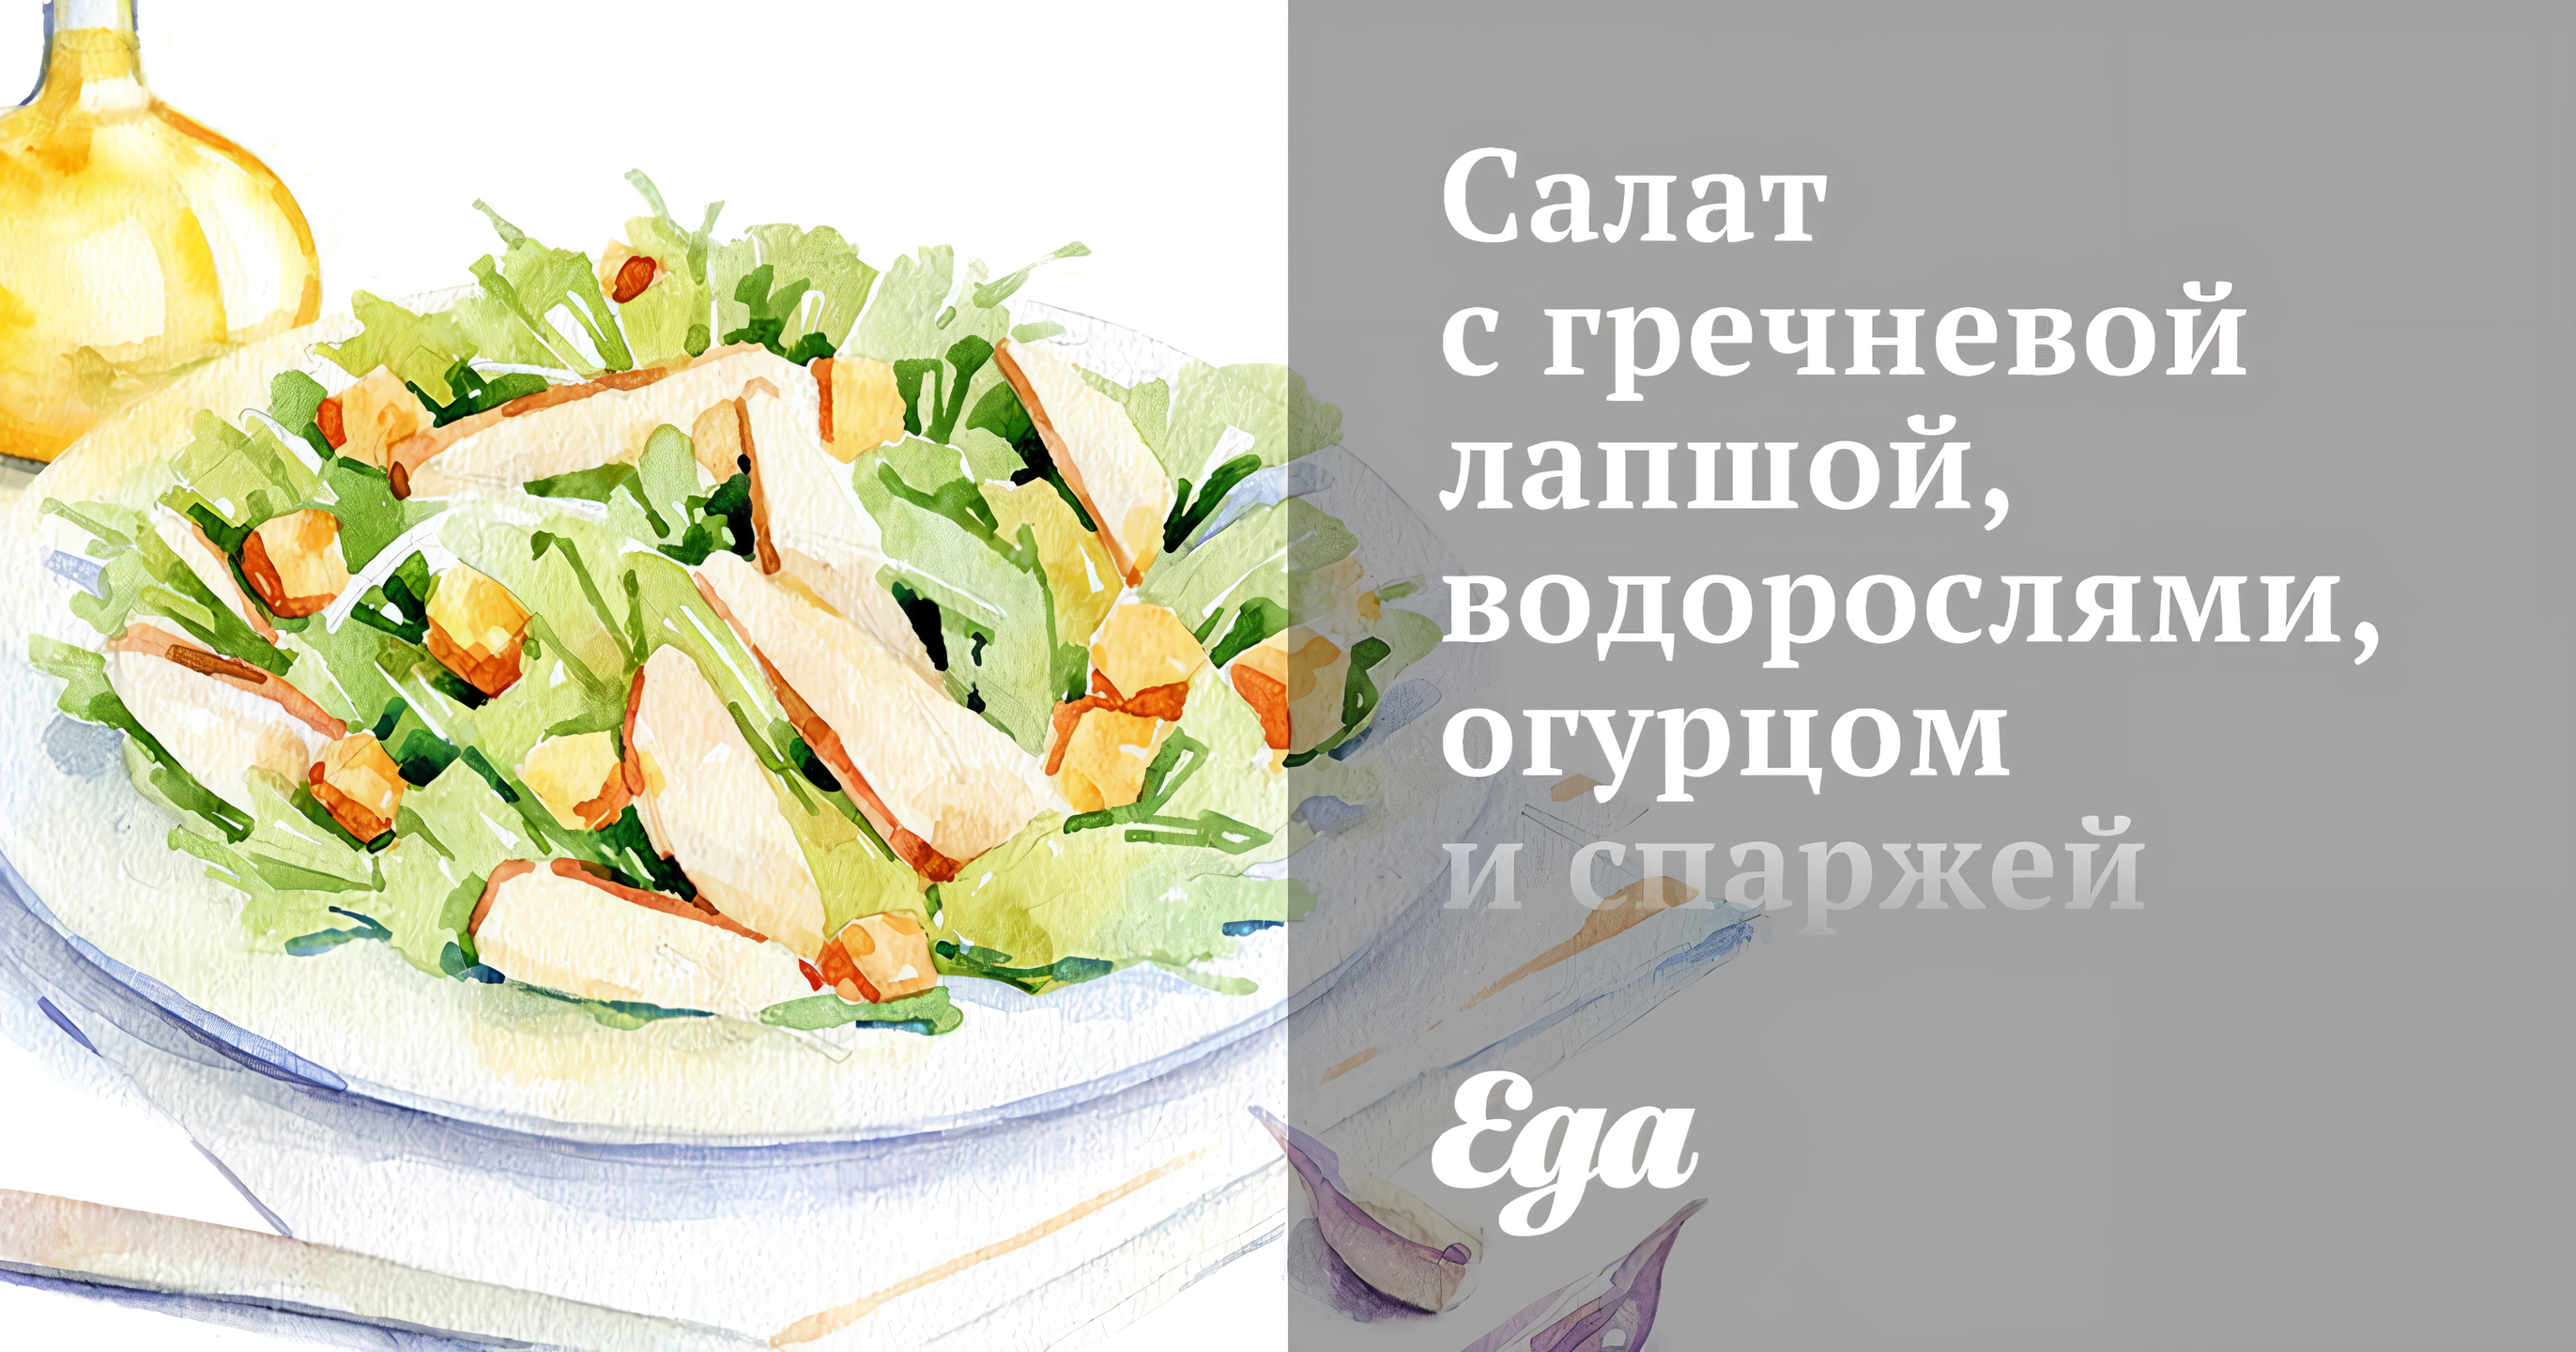 Салат с гречневой лапшой, водорослями, огурцом и спаржей